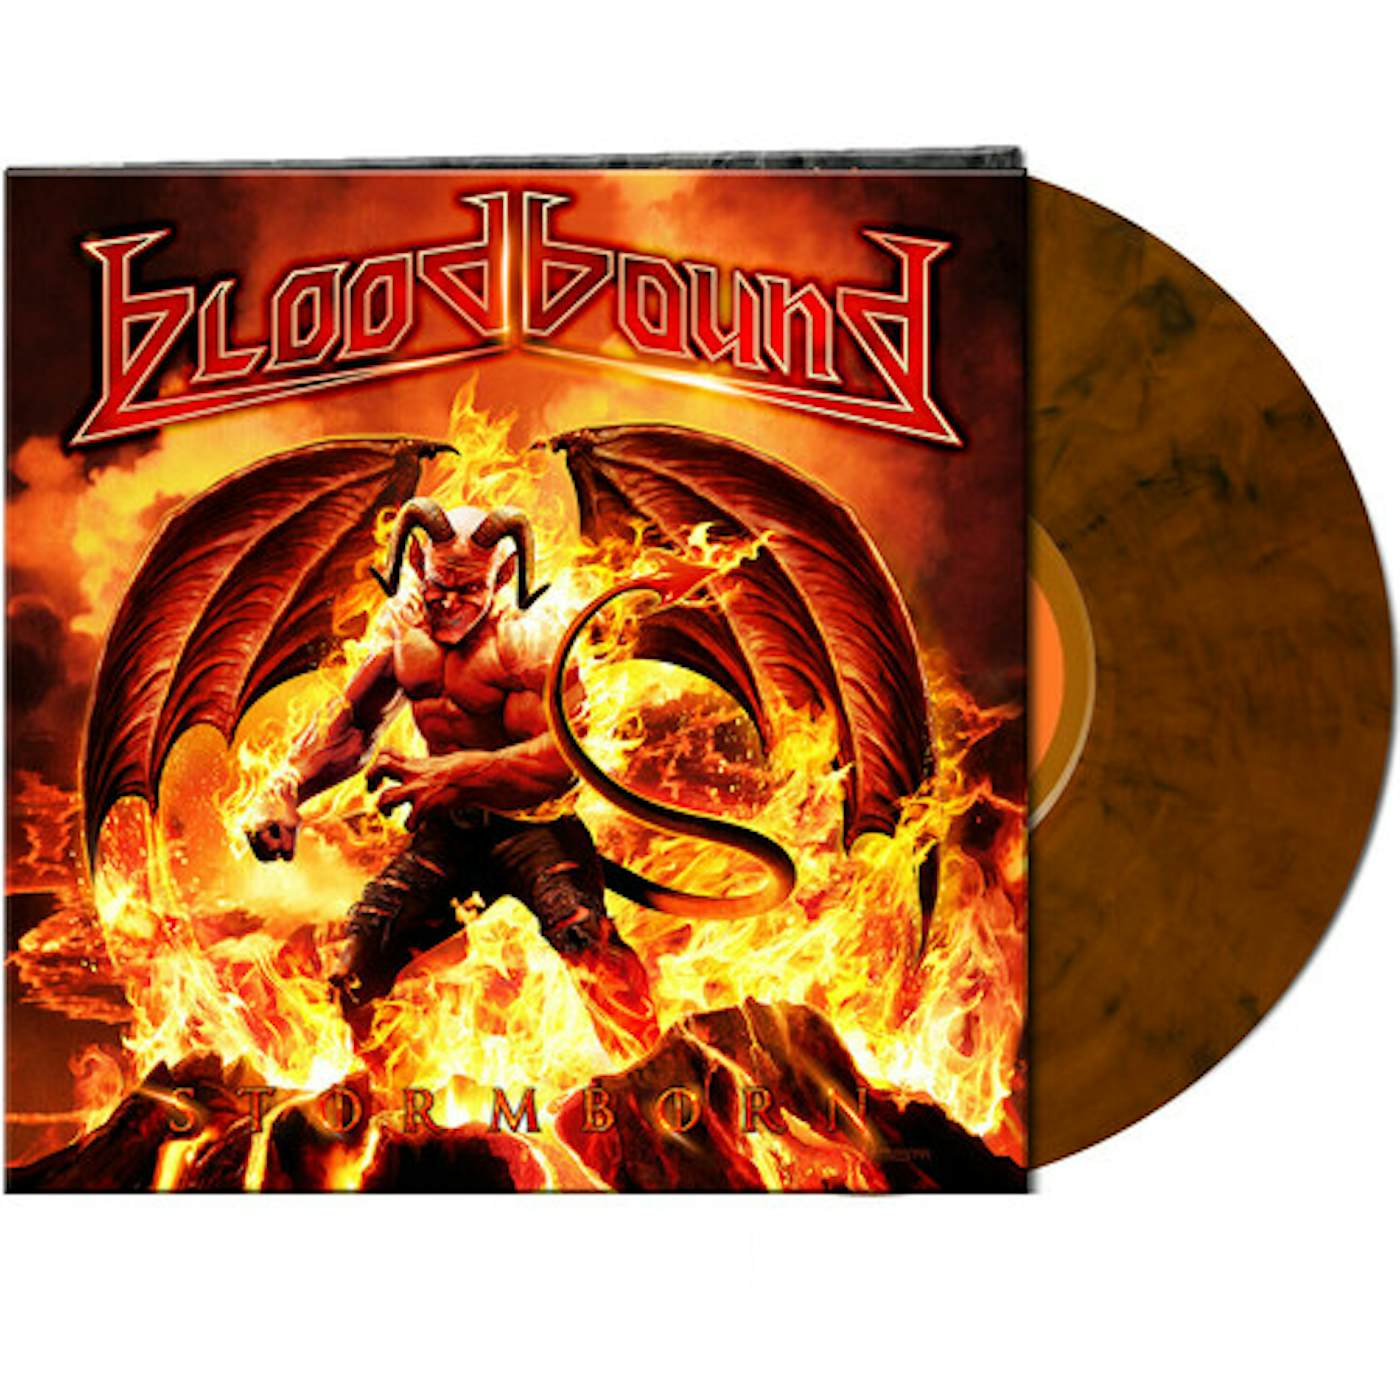 Bloodbound STORMBORN - ORANGE/BLACK MARBLED Vinyl Record